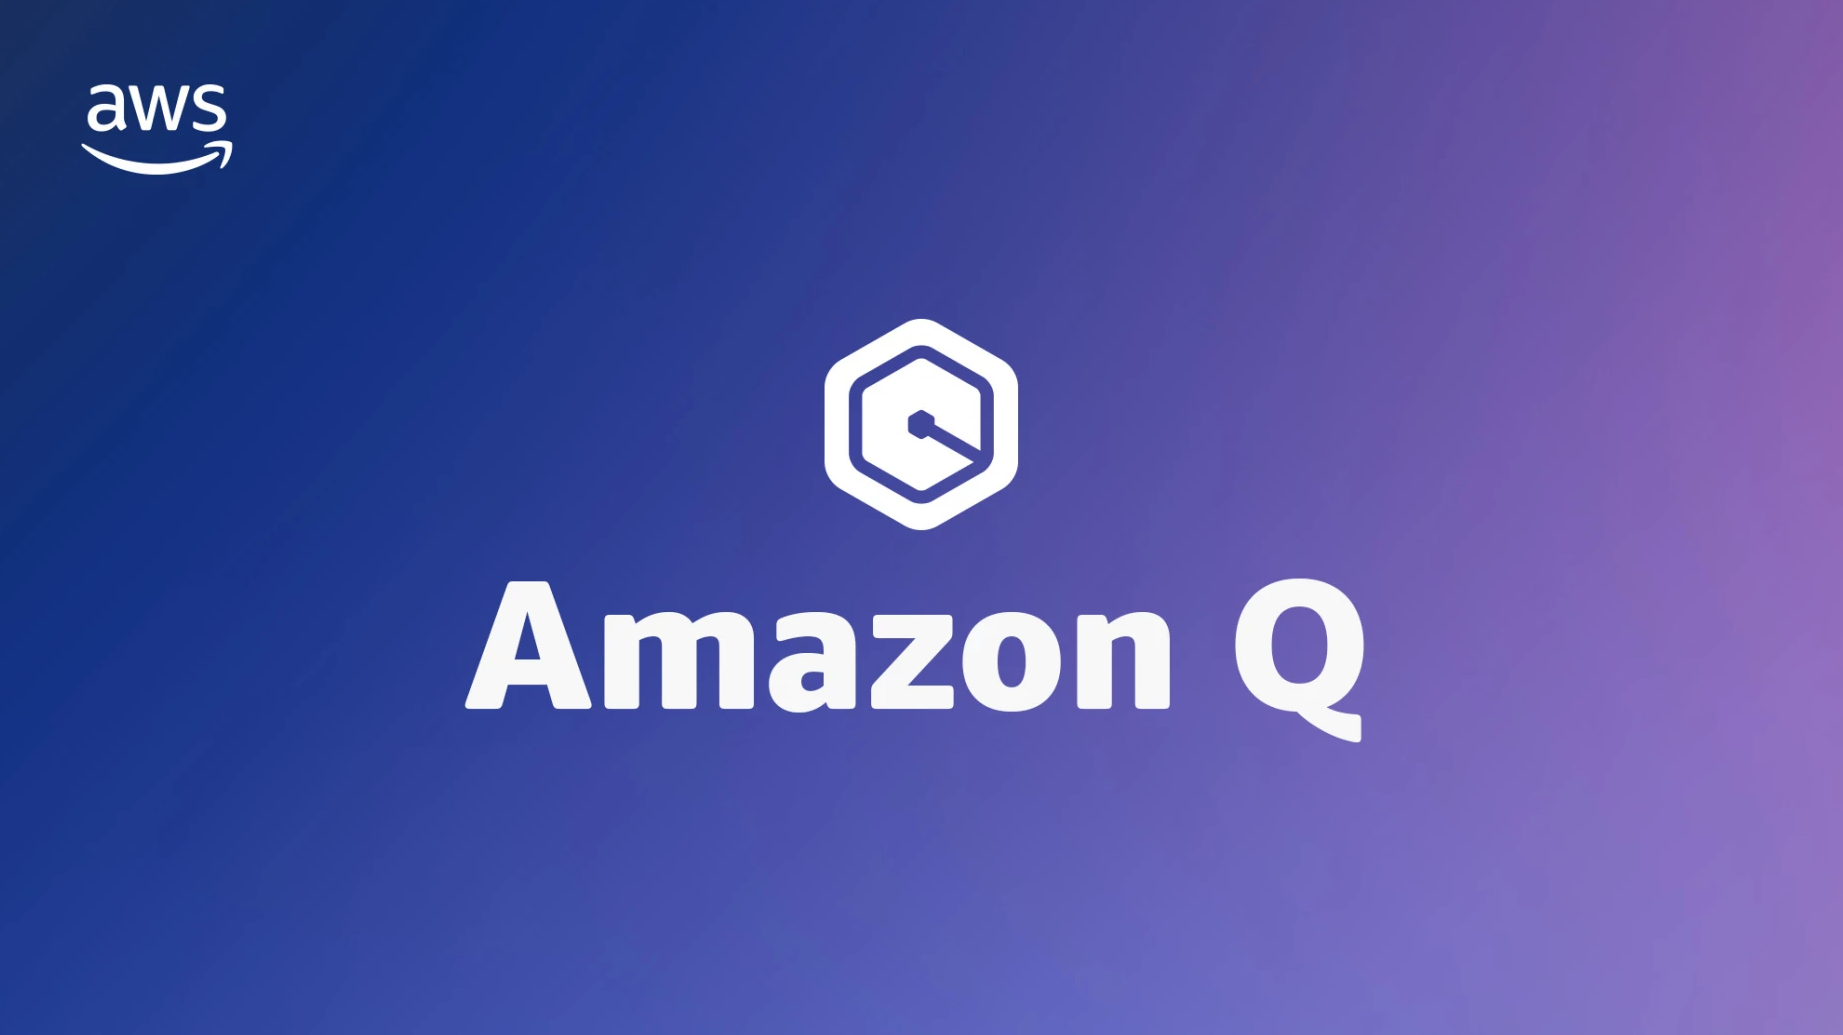 Amazon veröffentlicht Business-Chatbot 'Q' mit neuen Funktionen